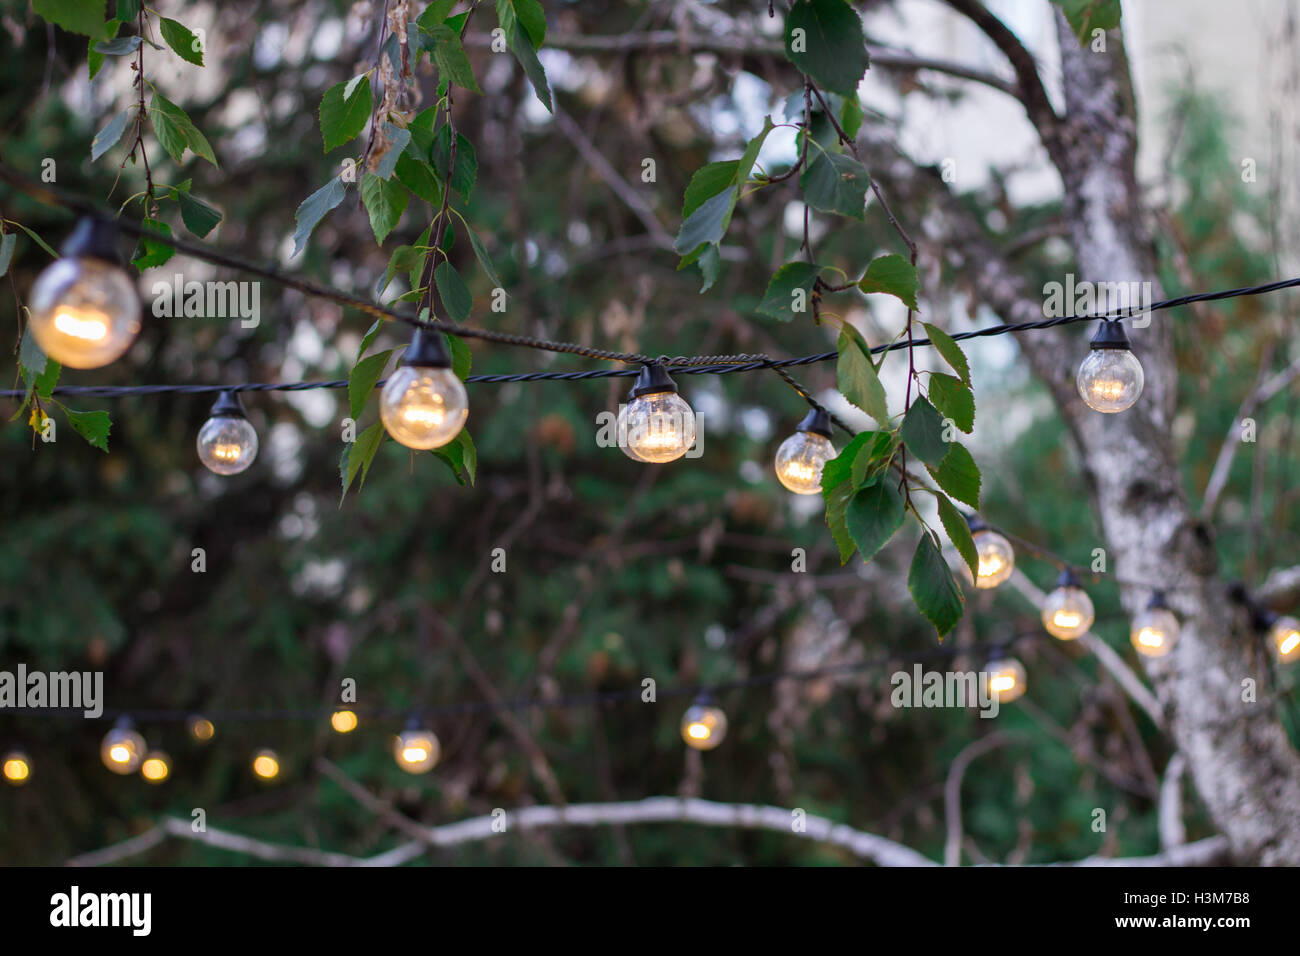 Dekorative elektrische Schwalbenschwanz Beleuchtung Lampen hängen unter den  Ästen im freien Stockfotografie - Alamy